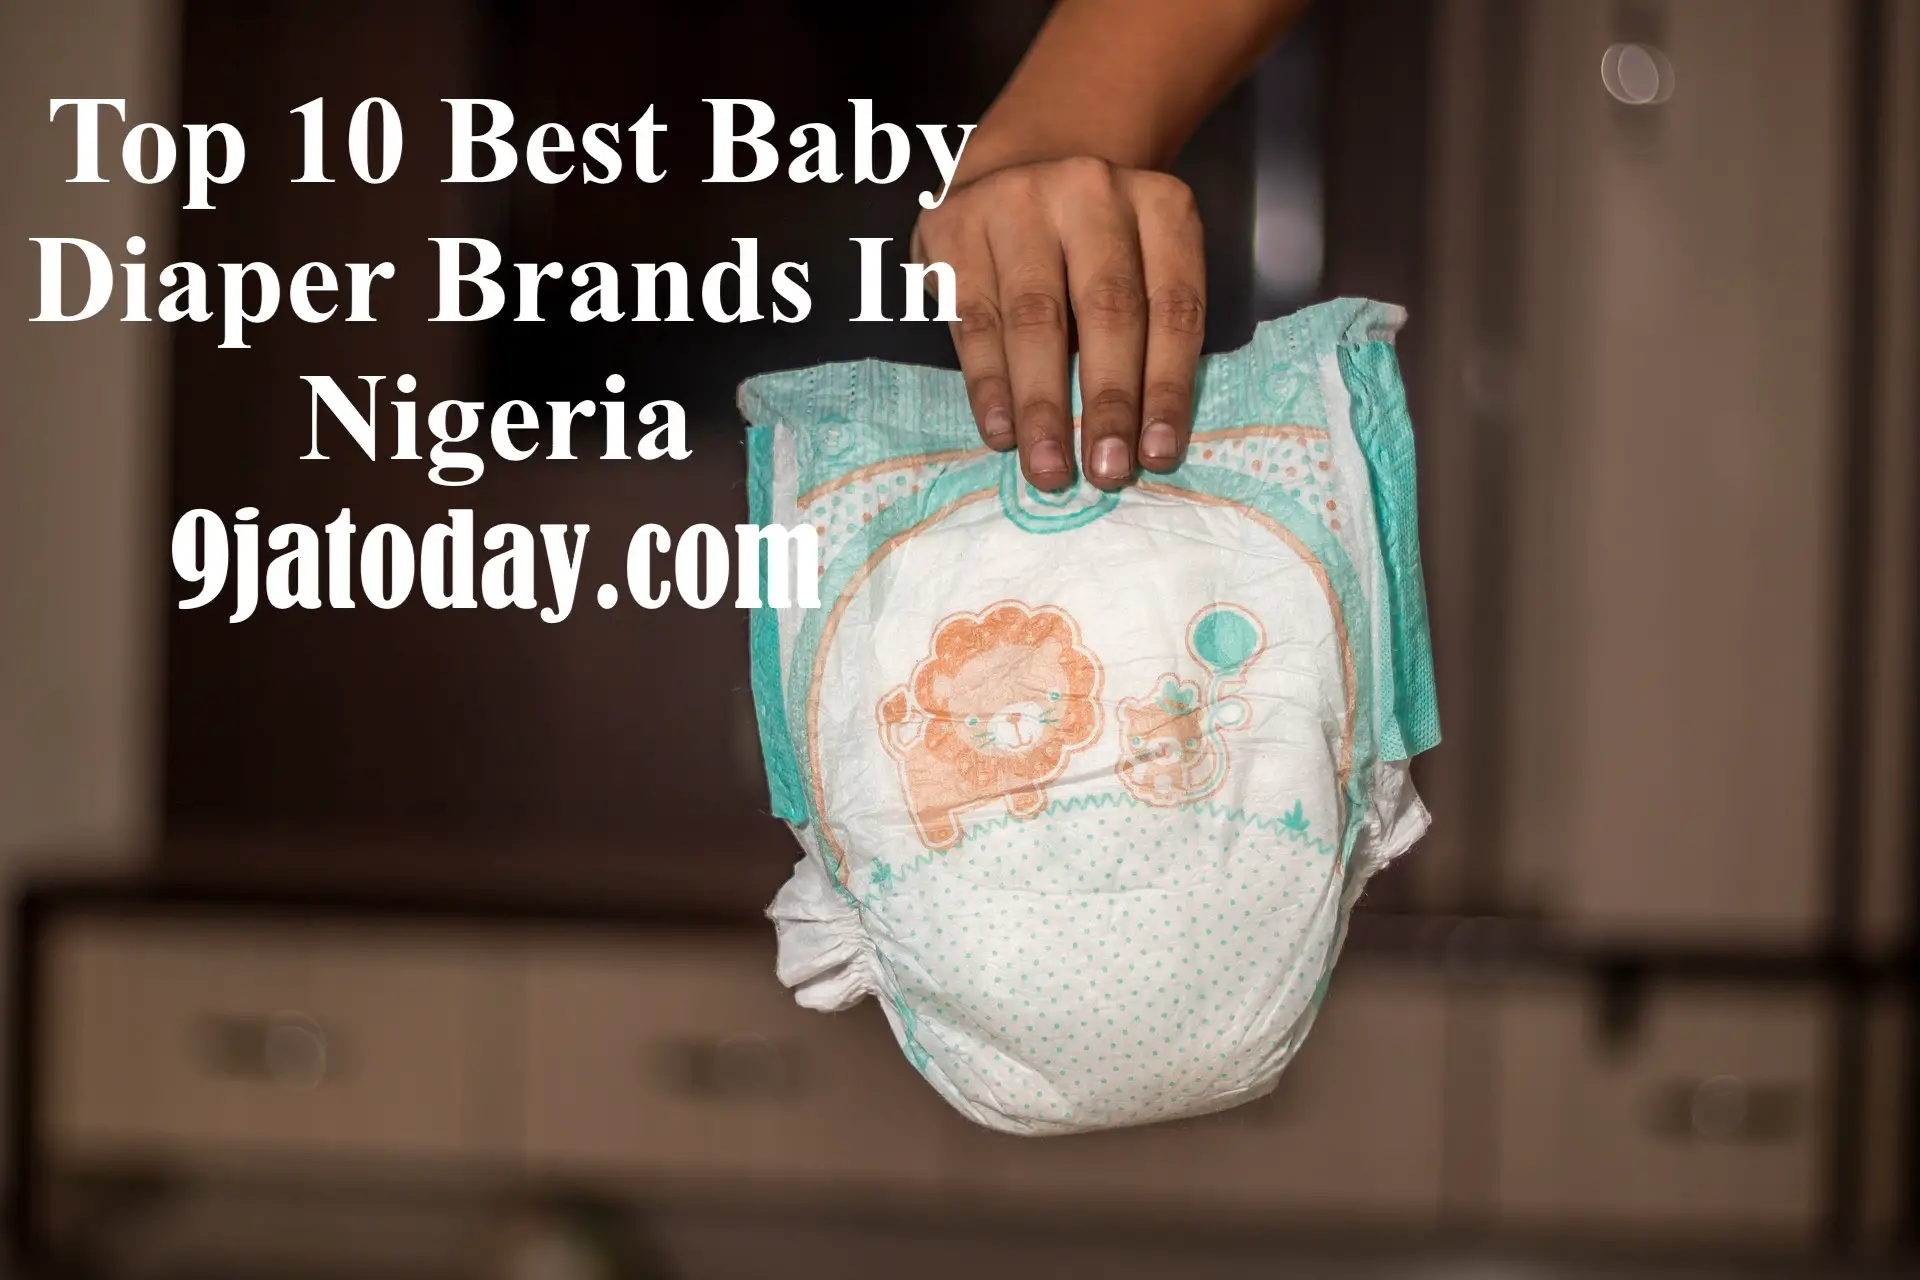 Top 10 Best Baby Diaper Brands In Nigeria